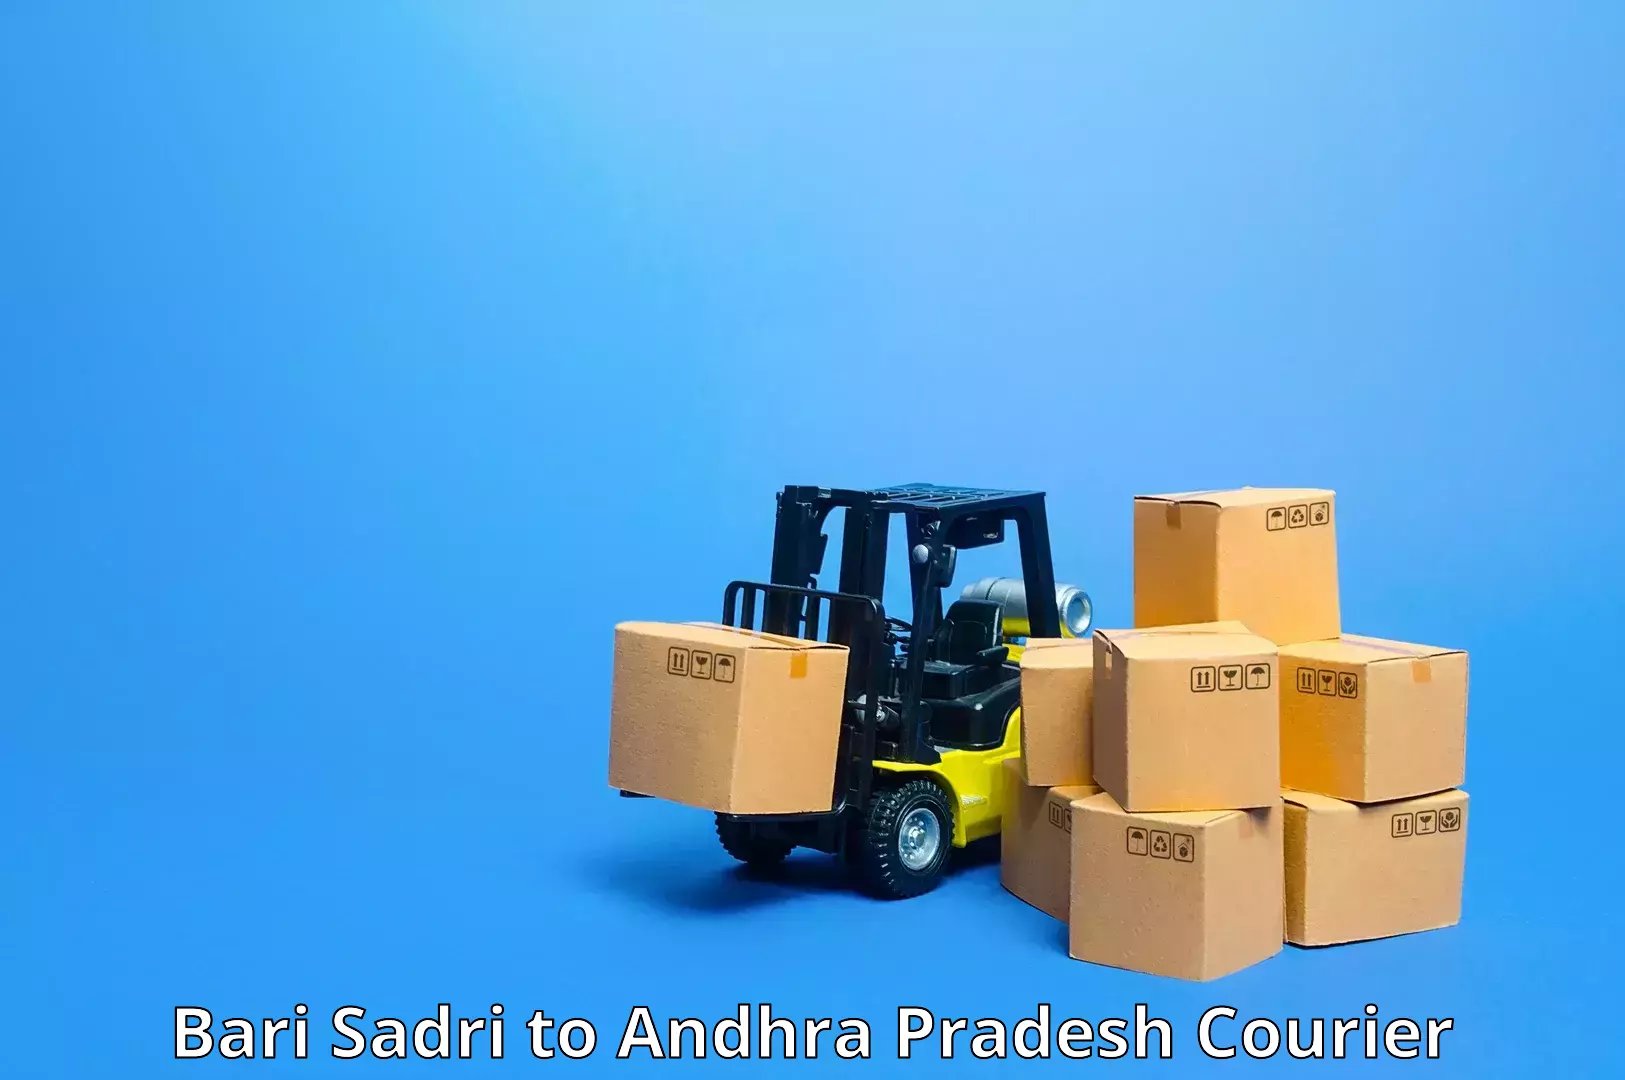 Customer-centric shipping Bari Sadri to Andhra Pradesh